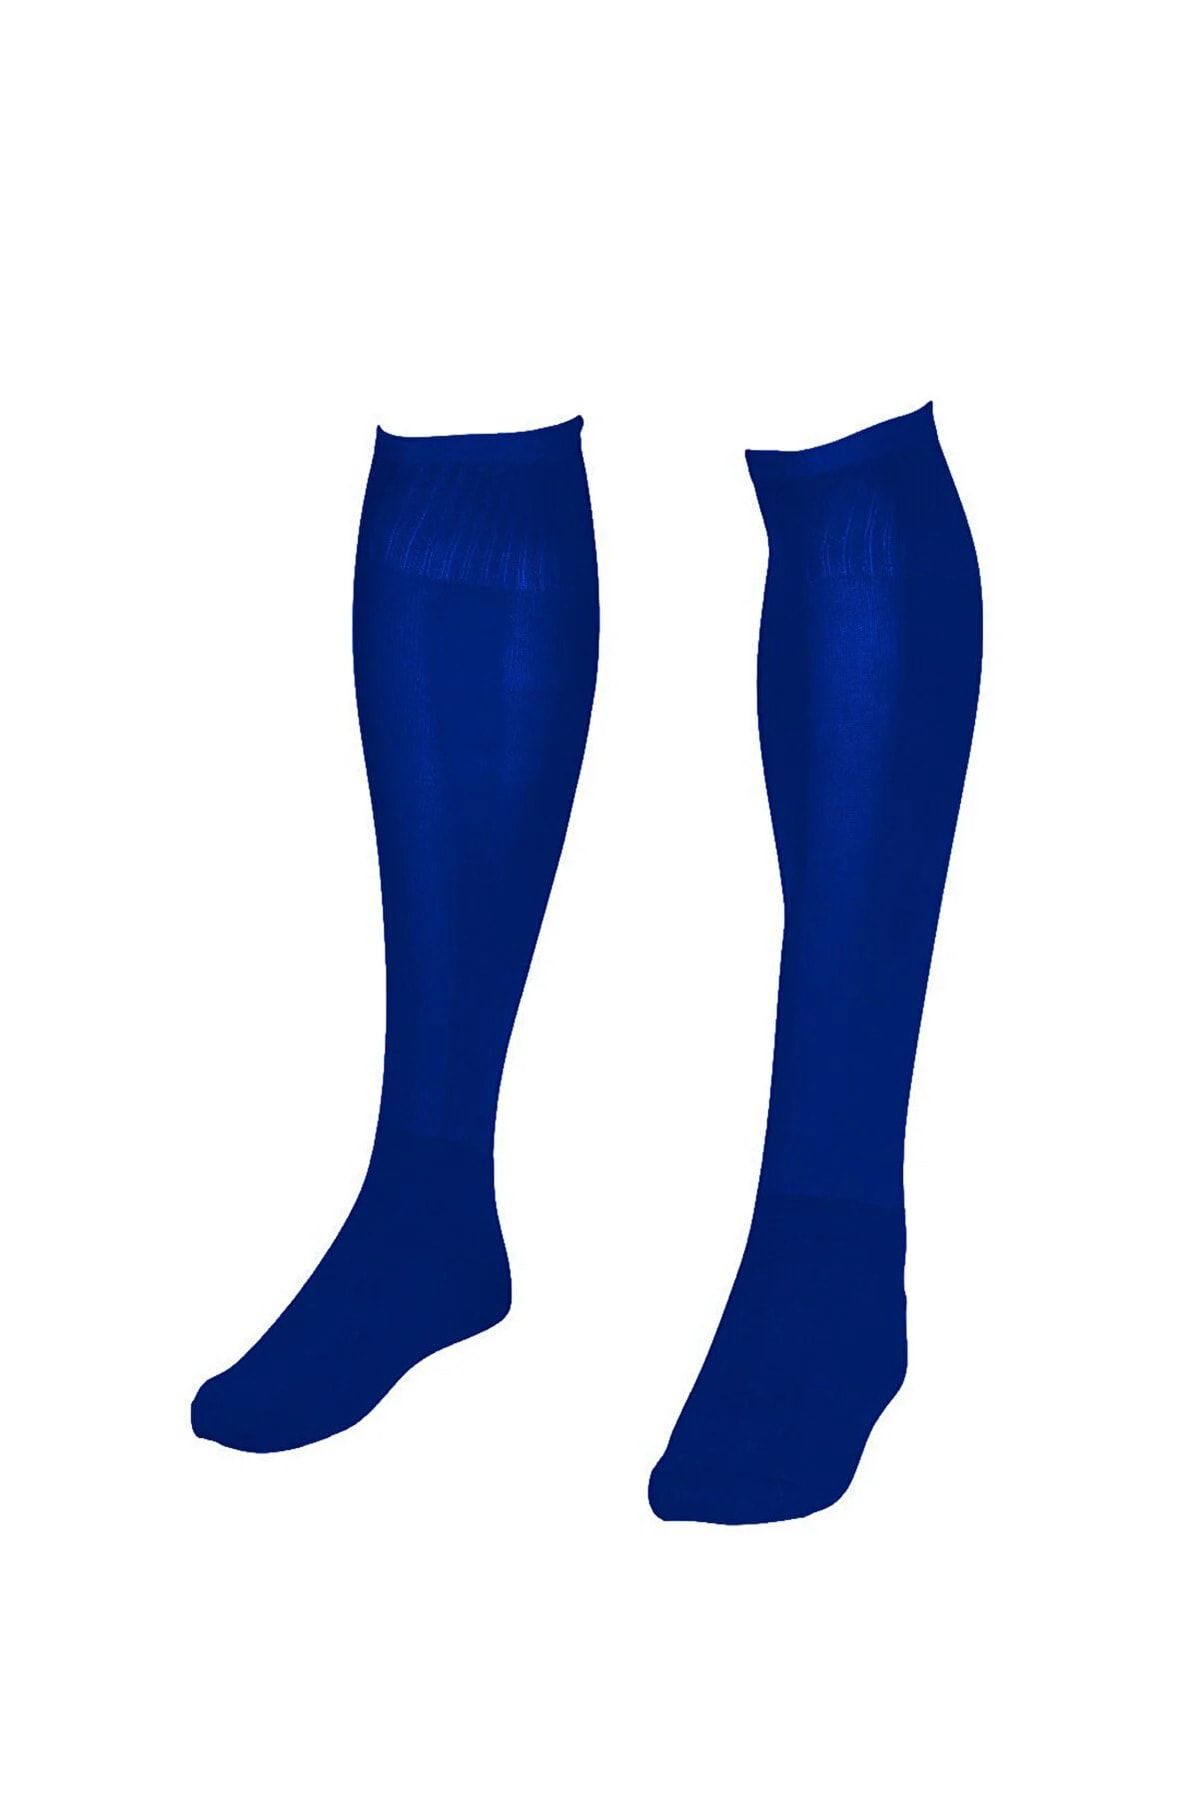 Avessa Futbol Maç Çorabı